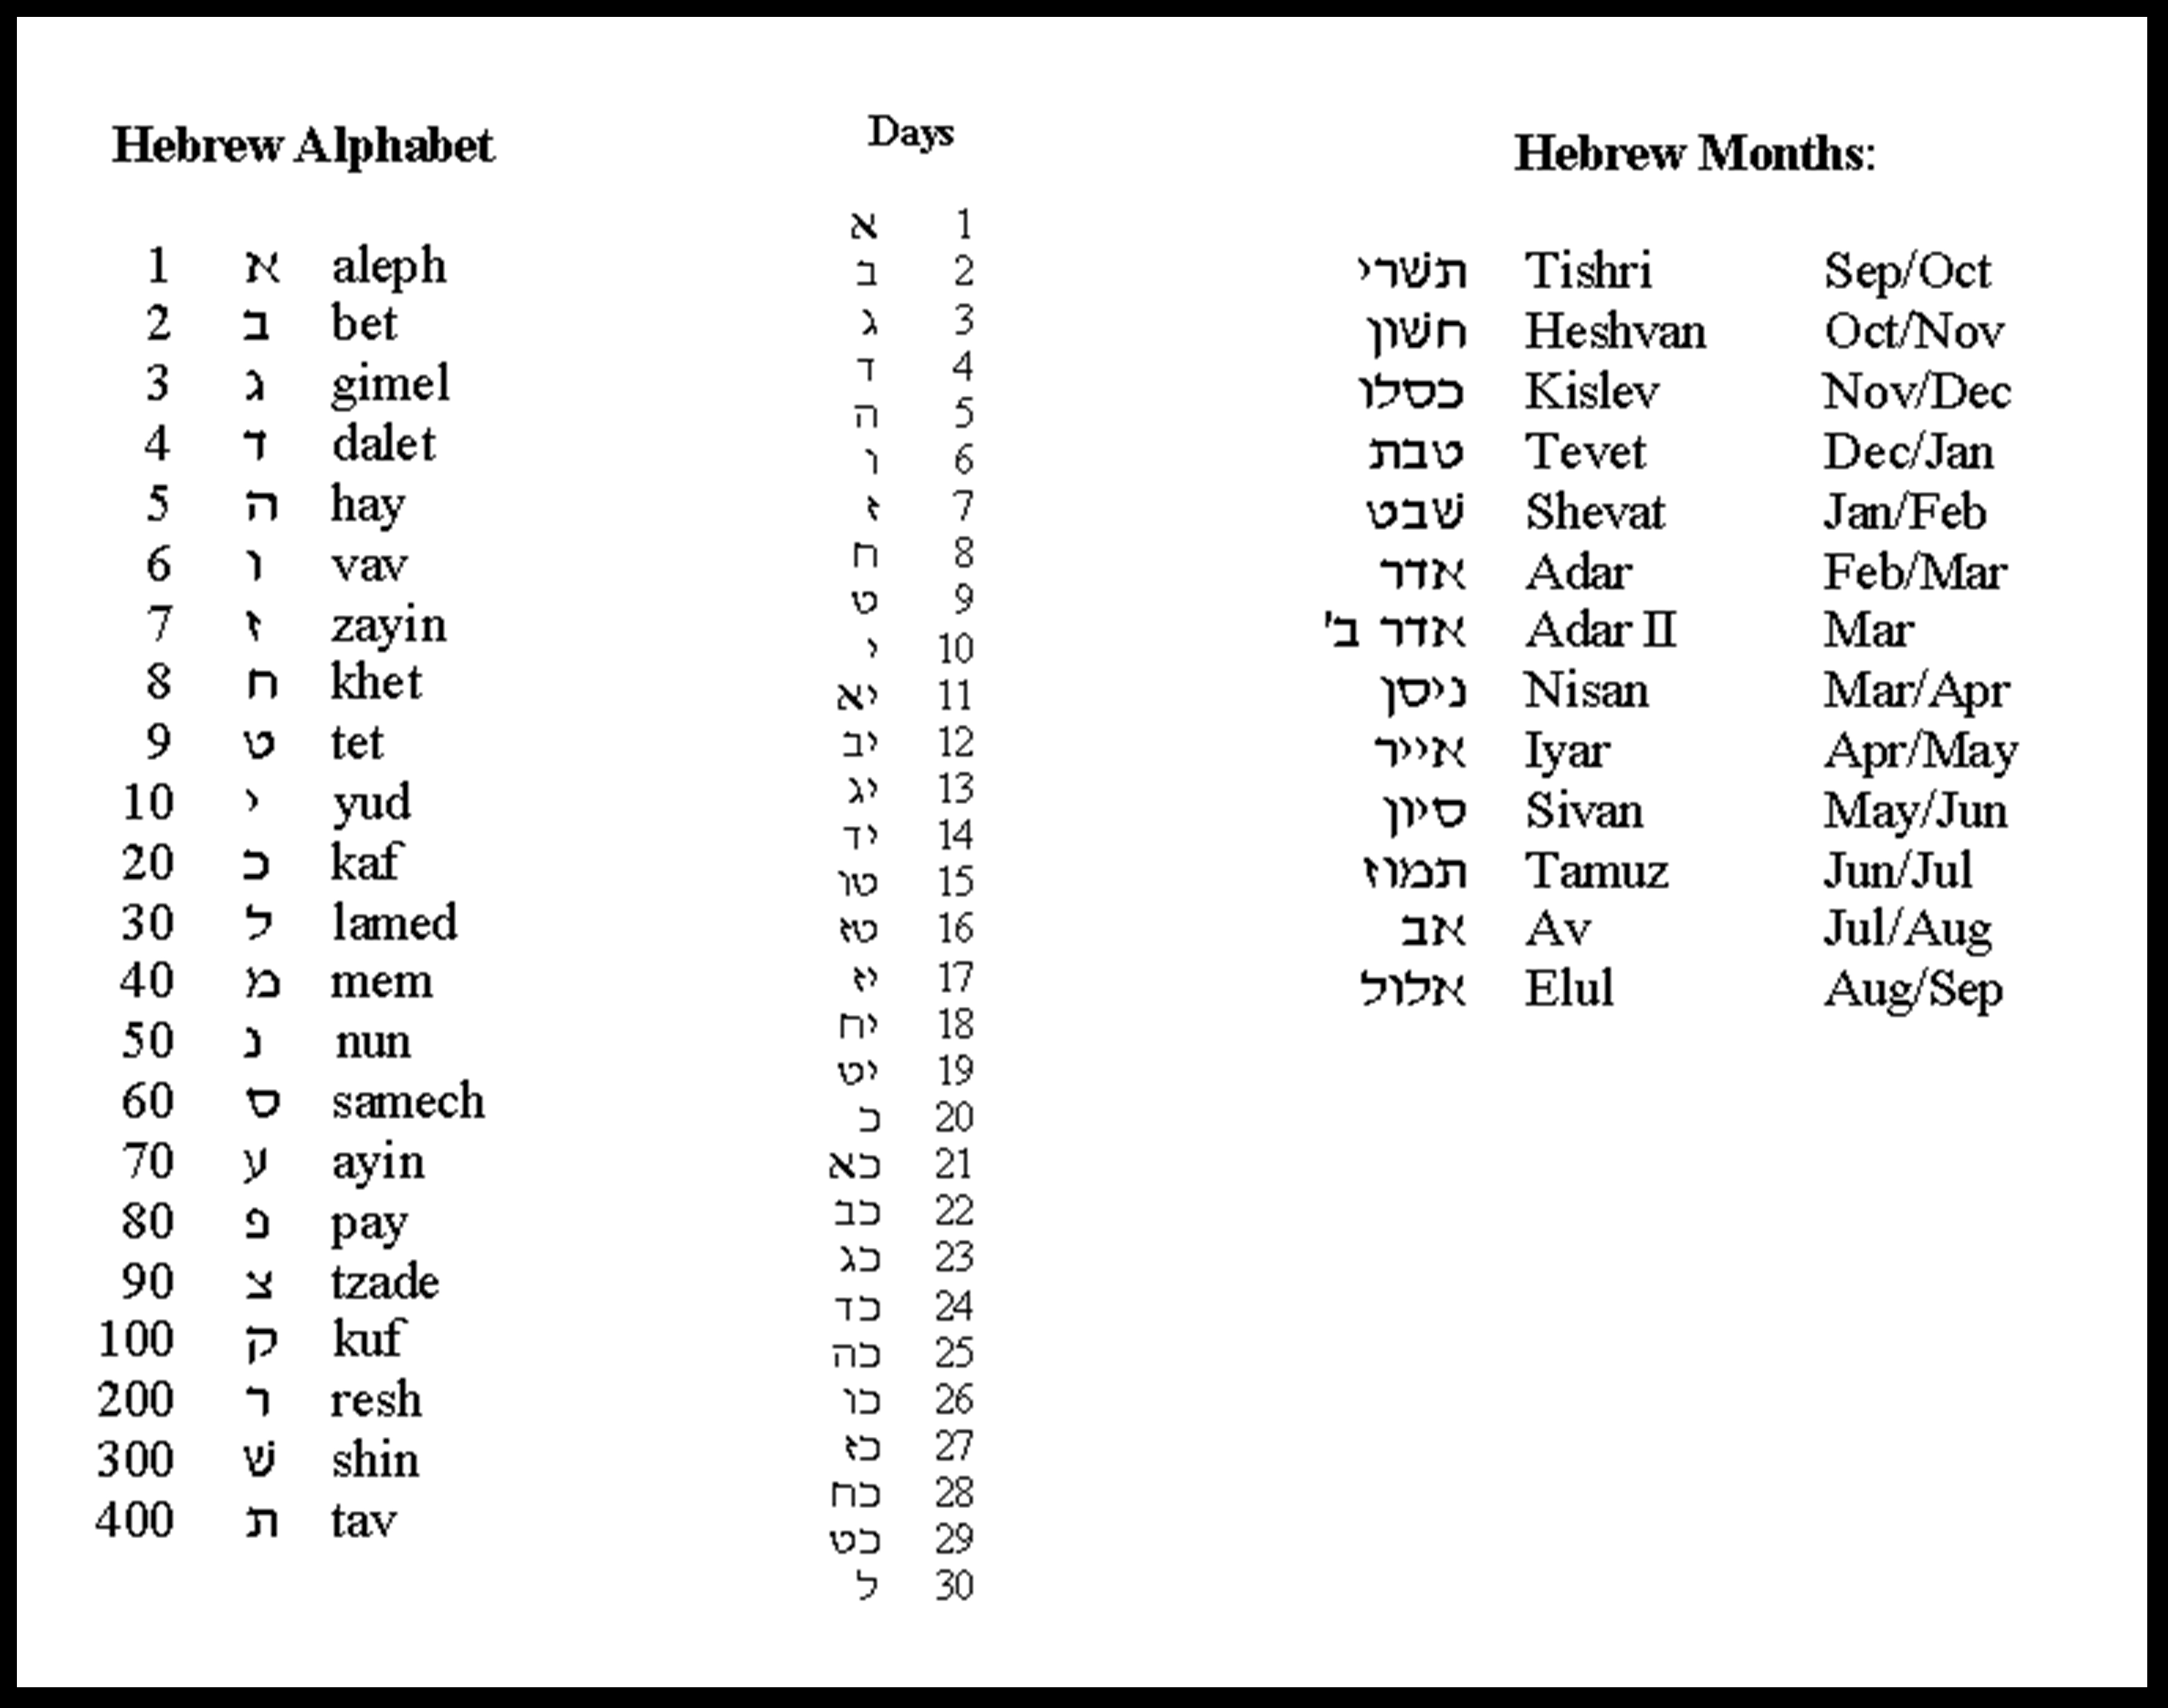 Hebrew-months.jpg